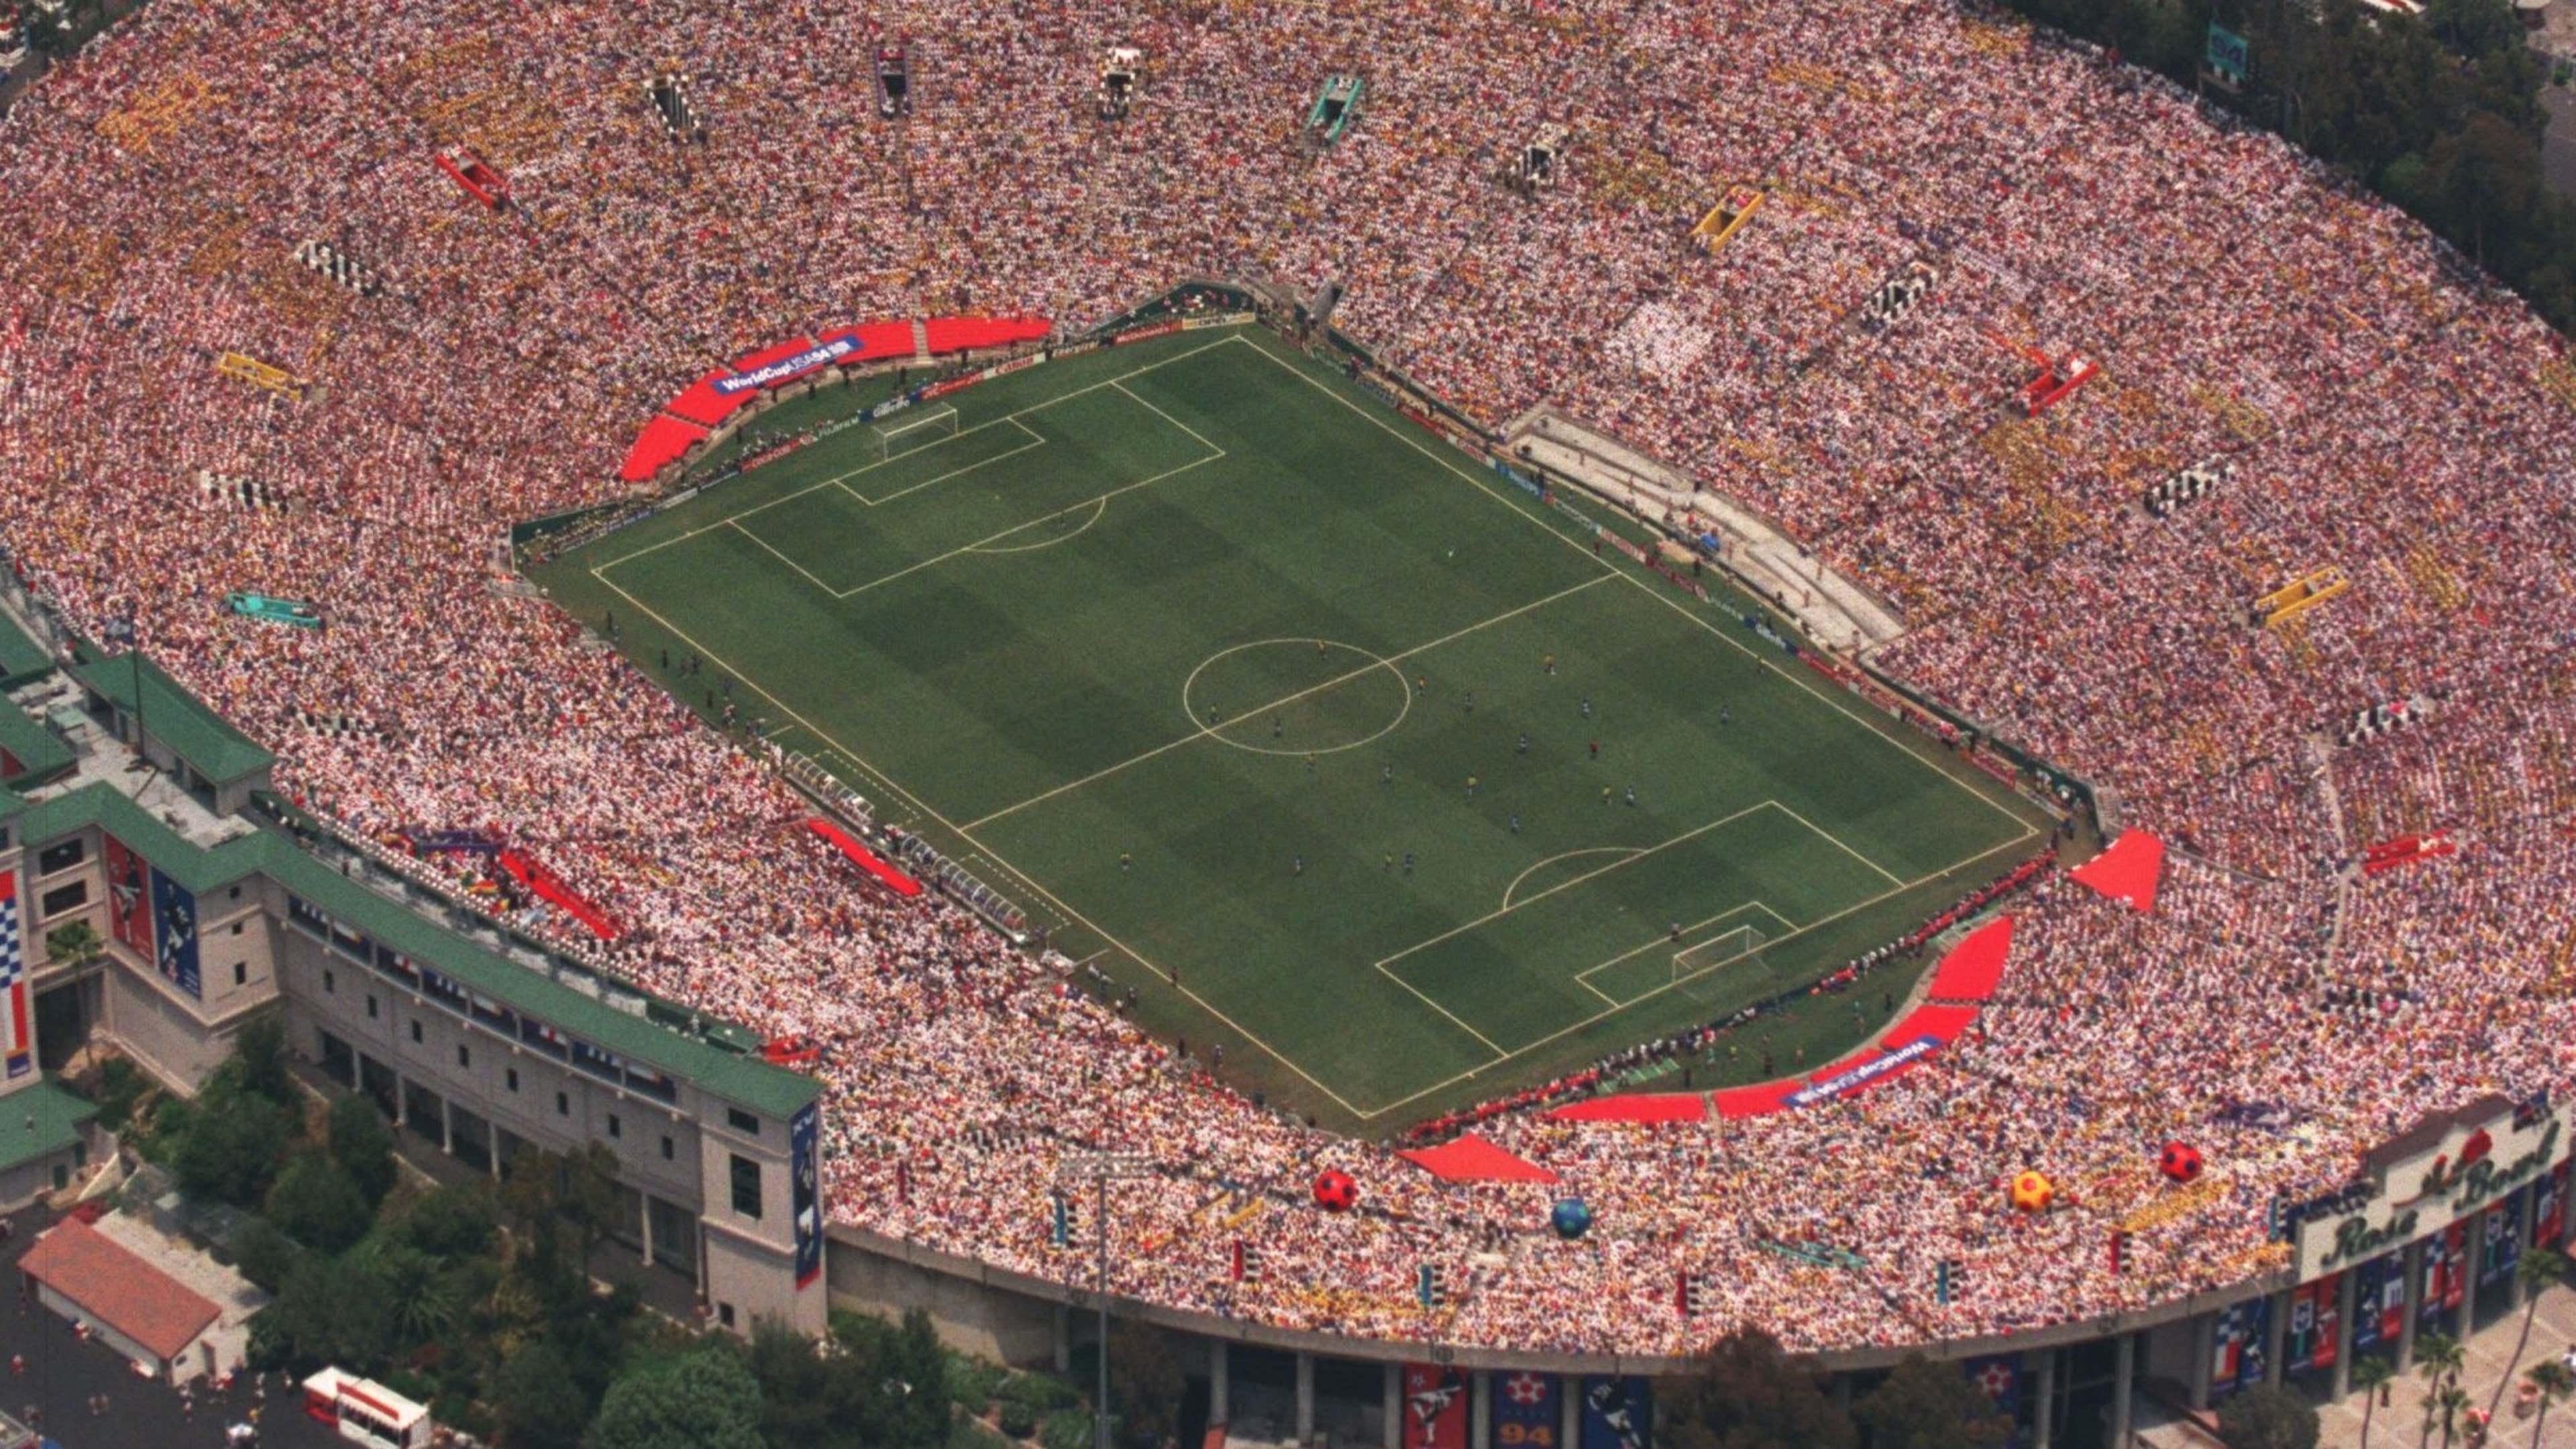 Quais são os estádios da Copa do Mundo de 2026?